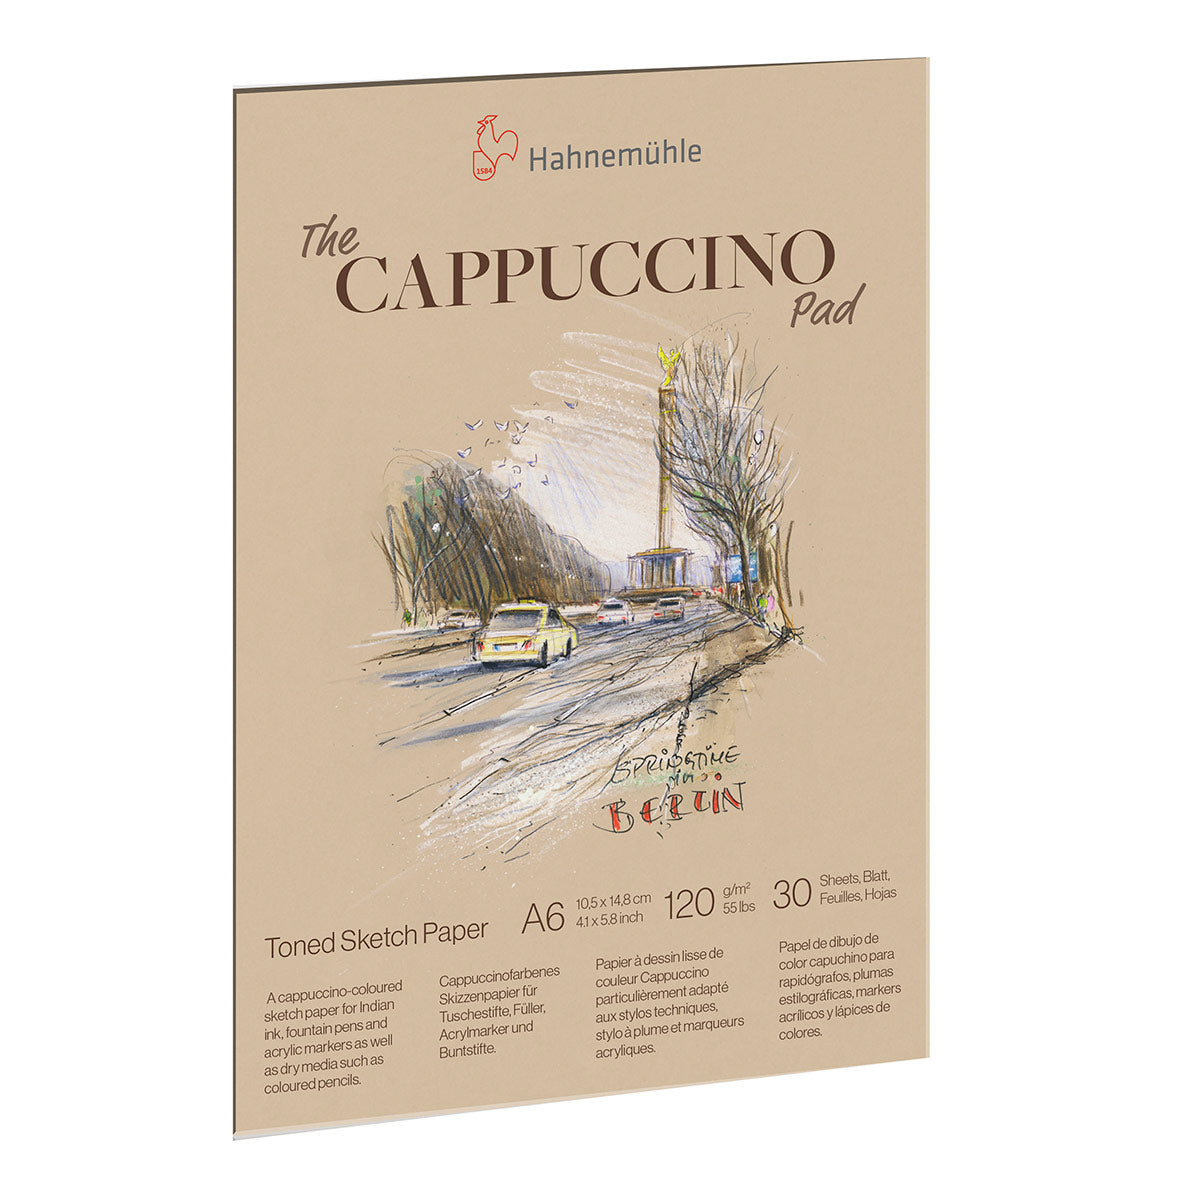 Hahnemuhle-Tampolino per schizzi di carta per cappuccino A6